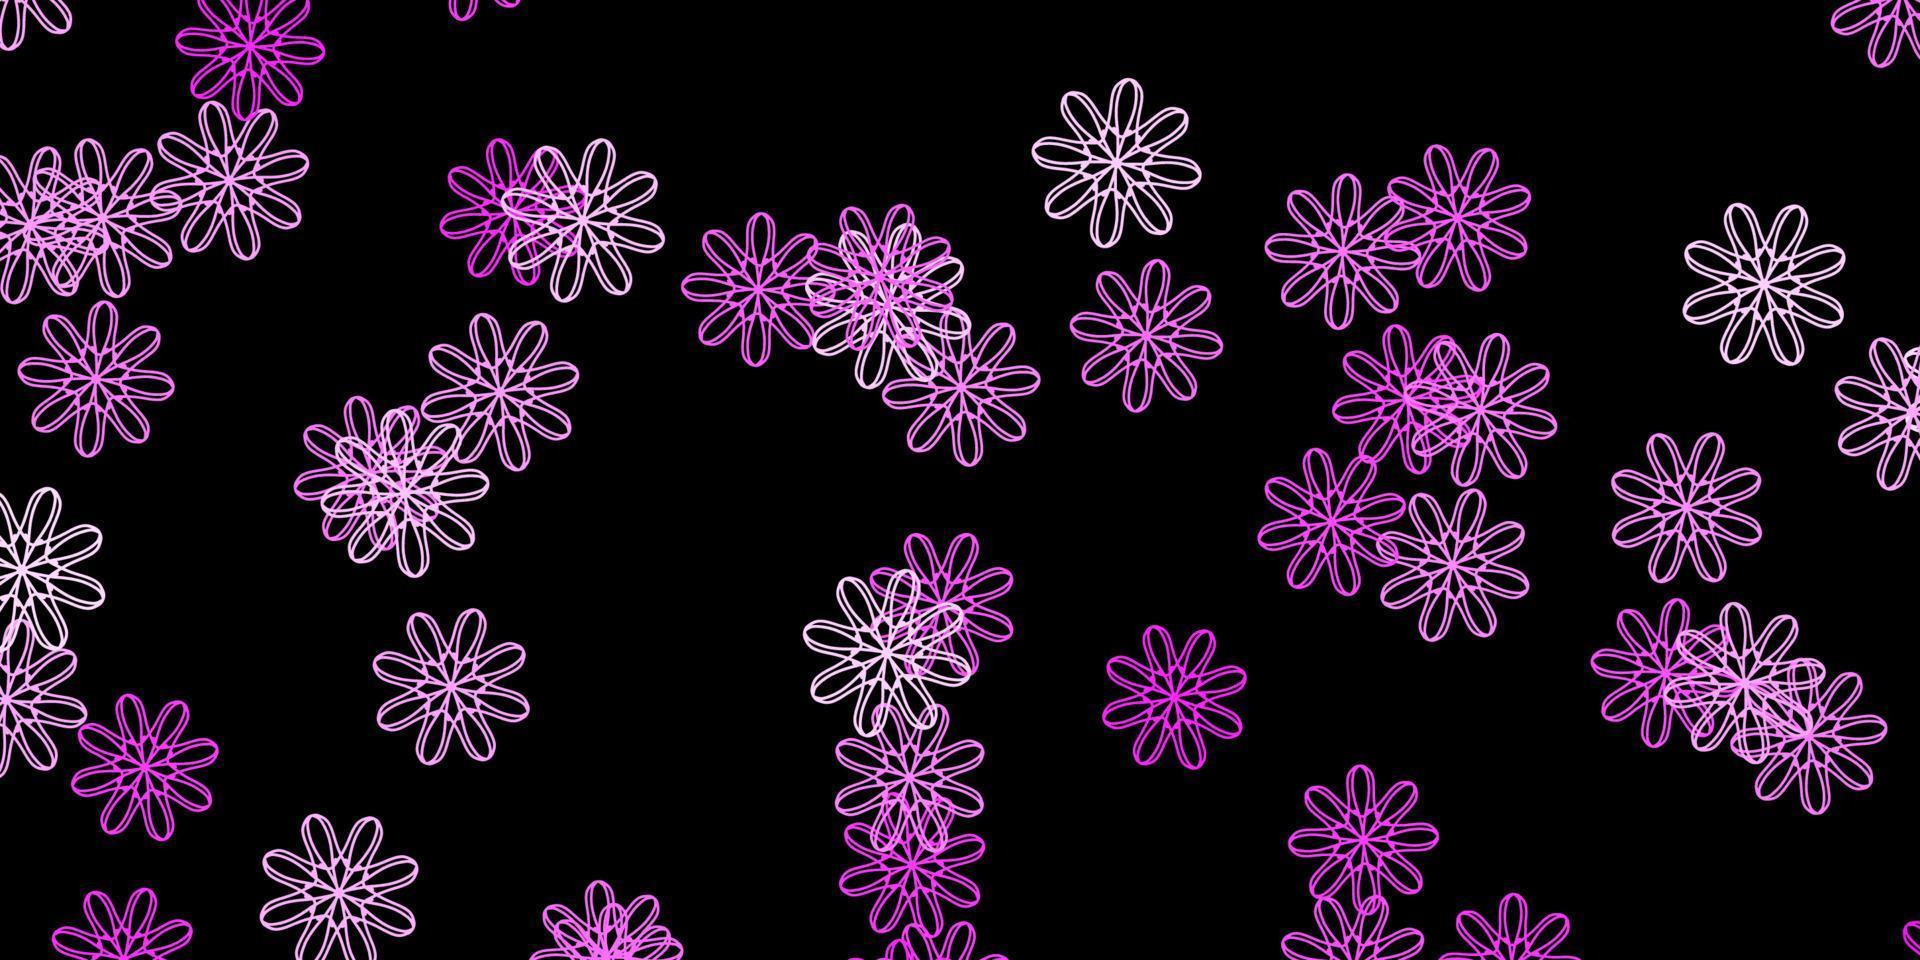 padrão de vetor rosa escuro com formas abstratas.